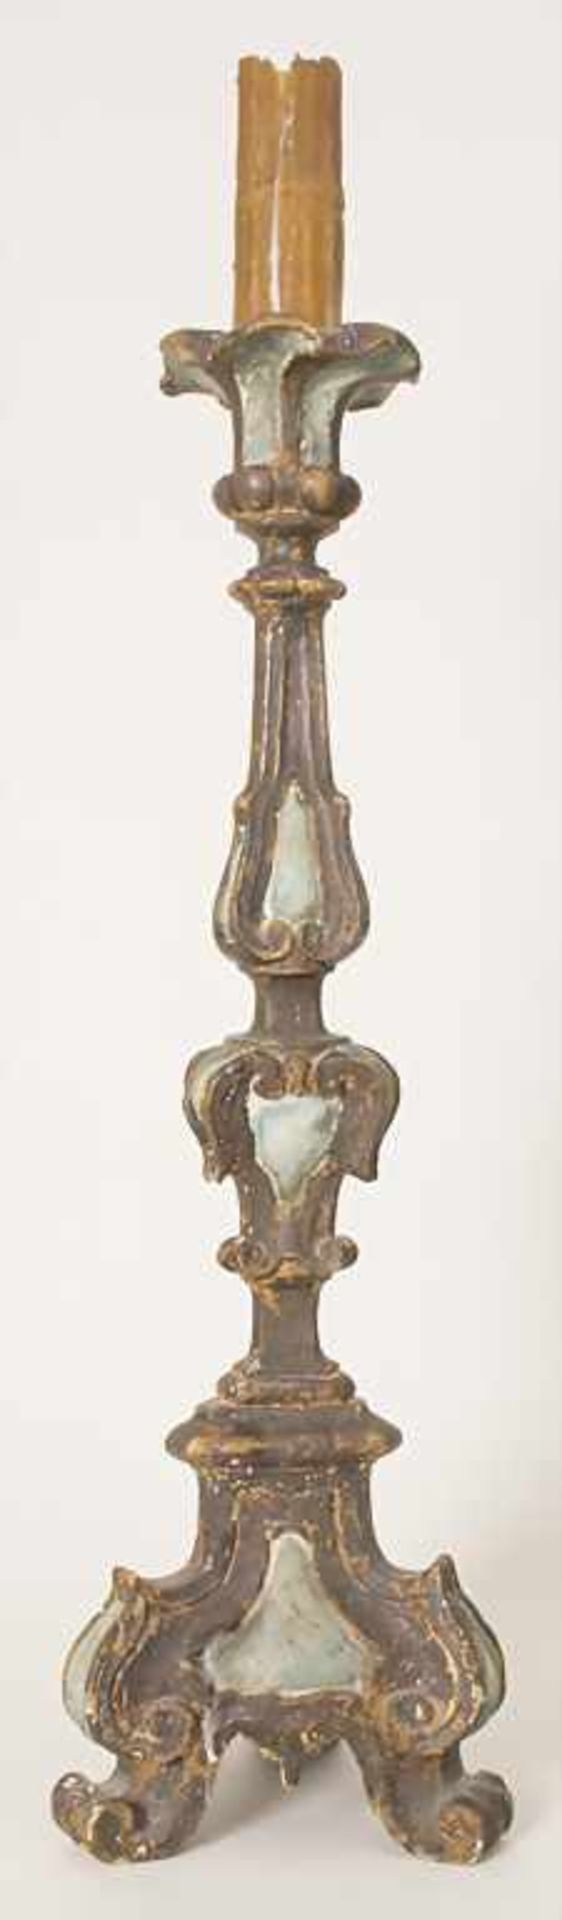 Altarleuchter / An altar candlestick, süddeutsch 18. Jh.Material: Holz, geschnitzt, farbig